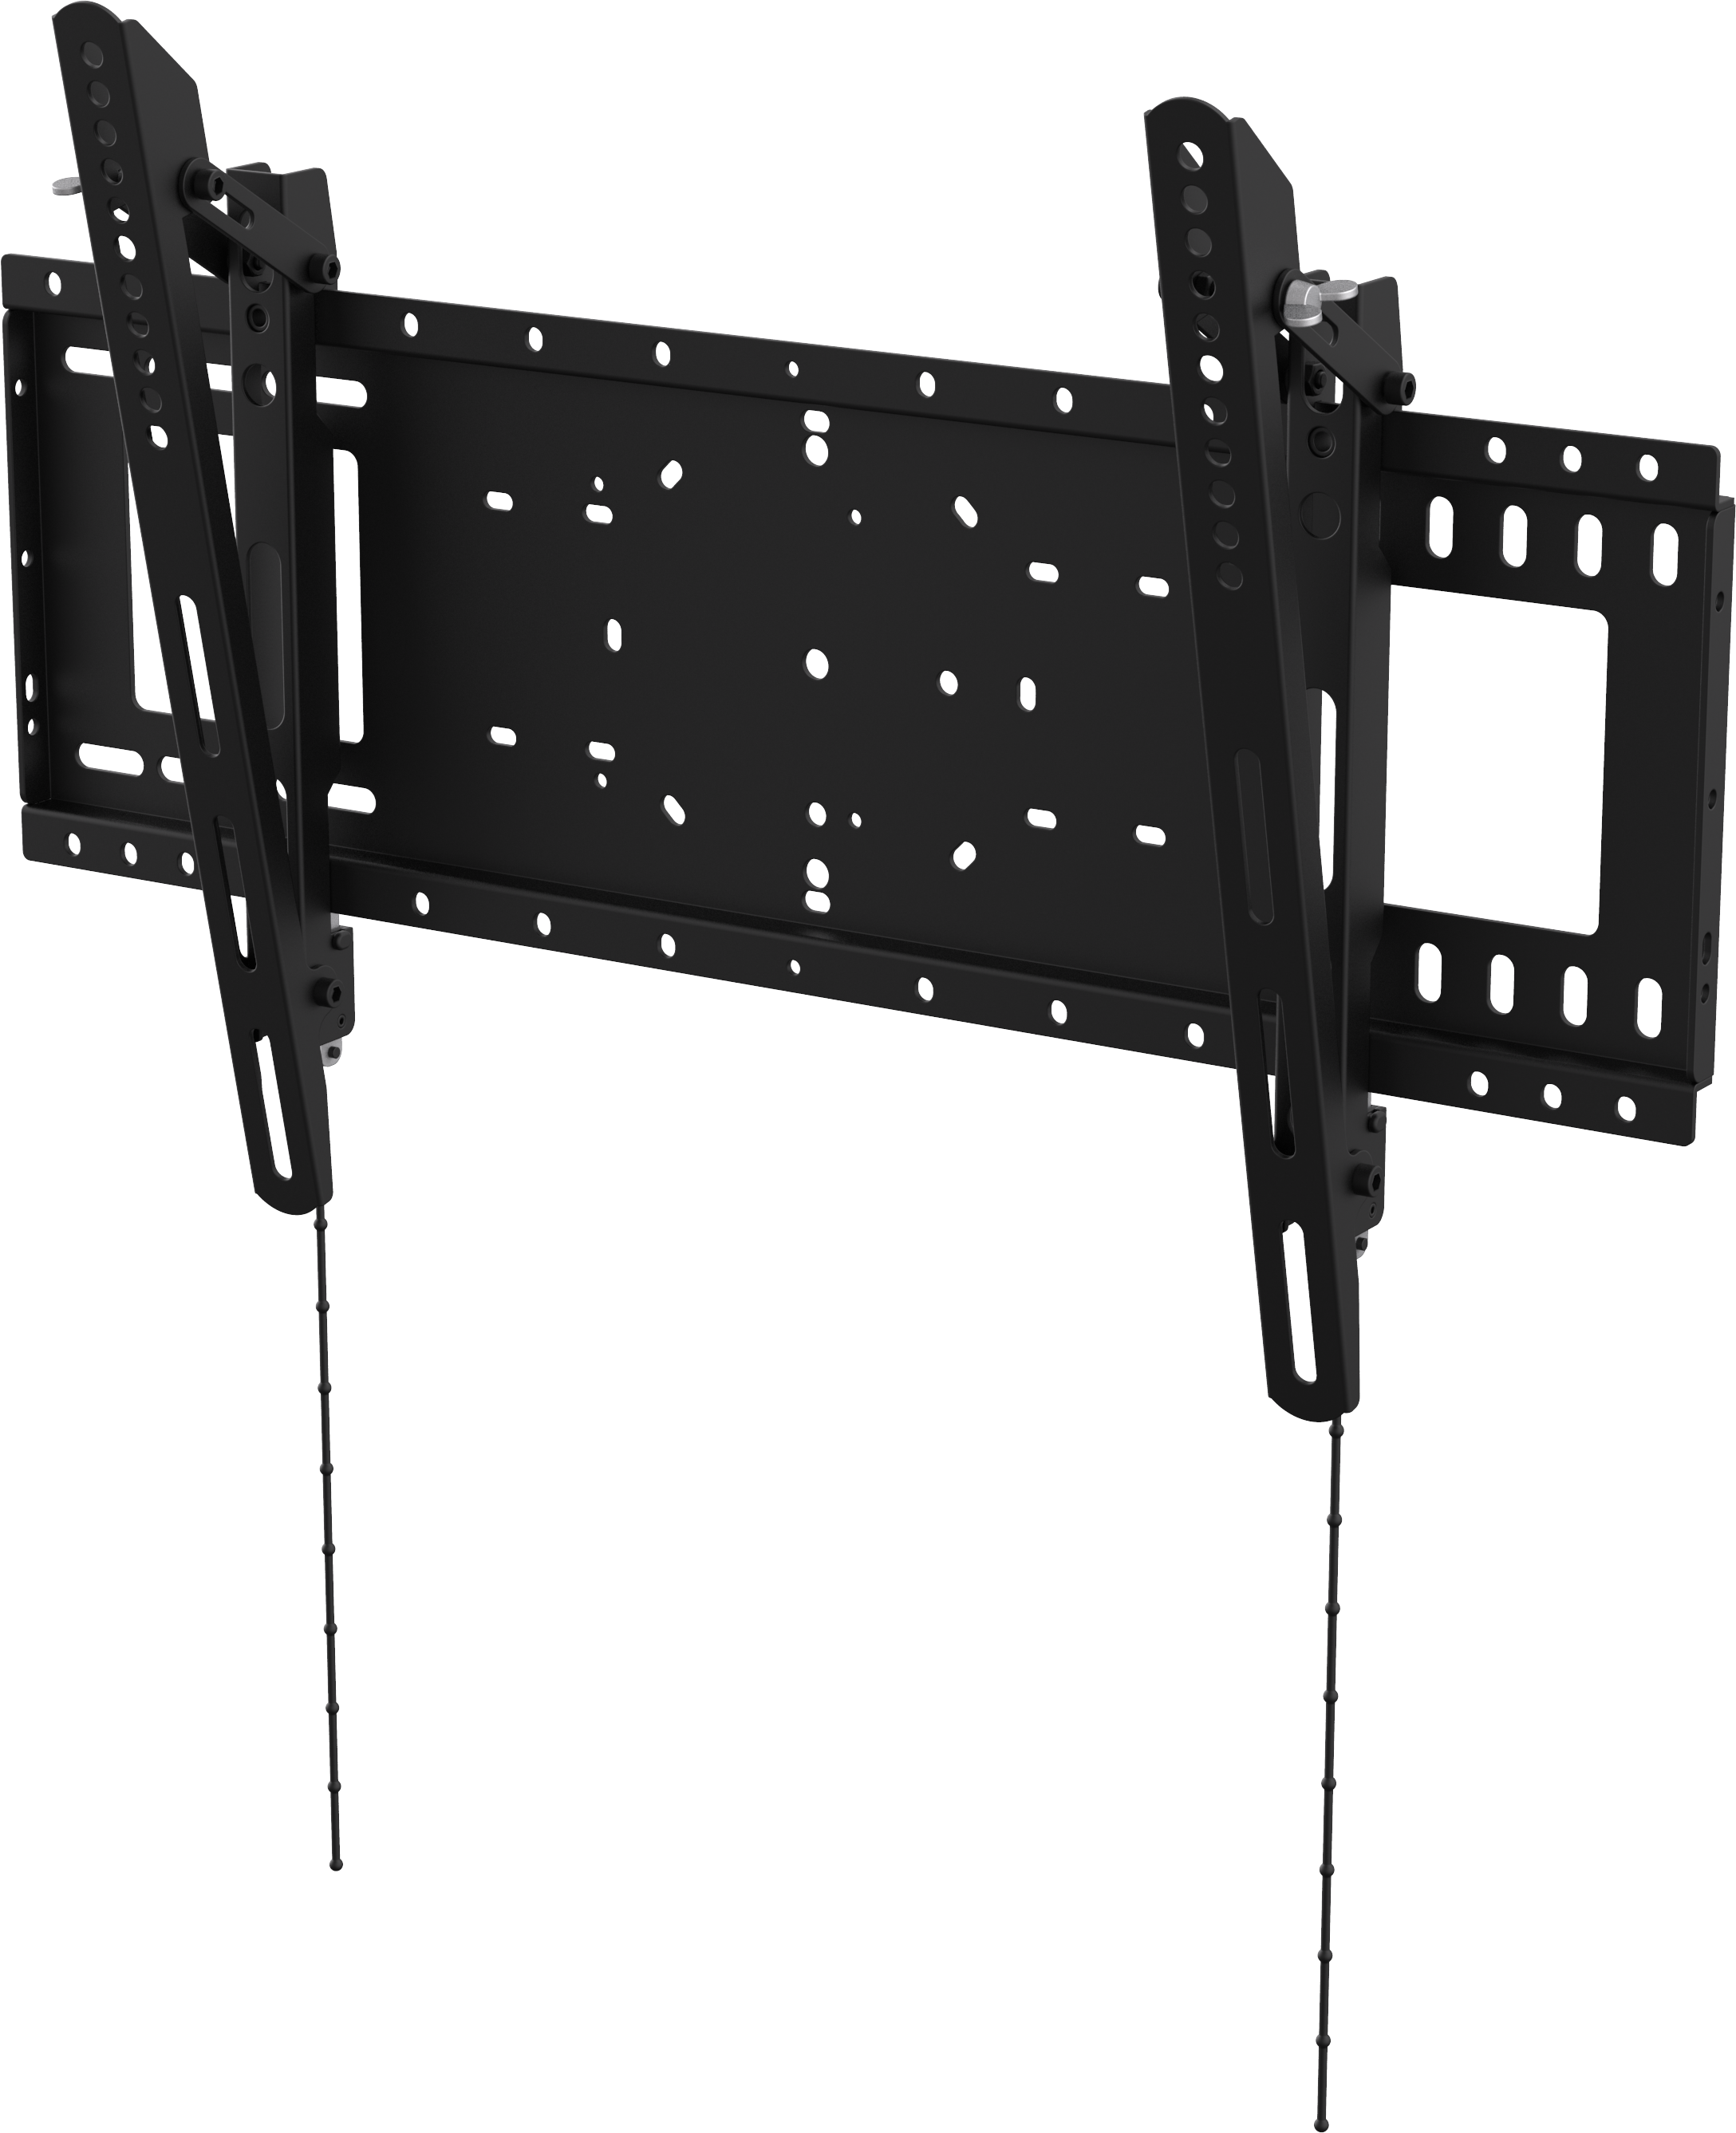 An image showing Suporte de parede de resistência elevada para ecrãs planos, com inclinação, 600×400